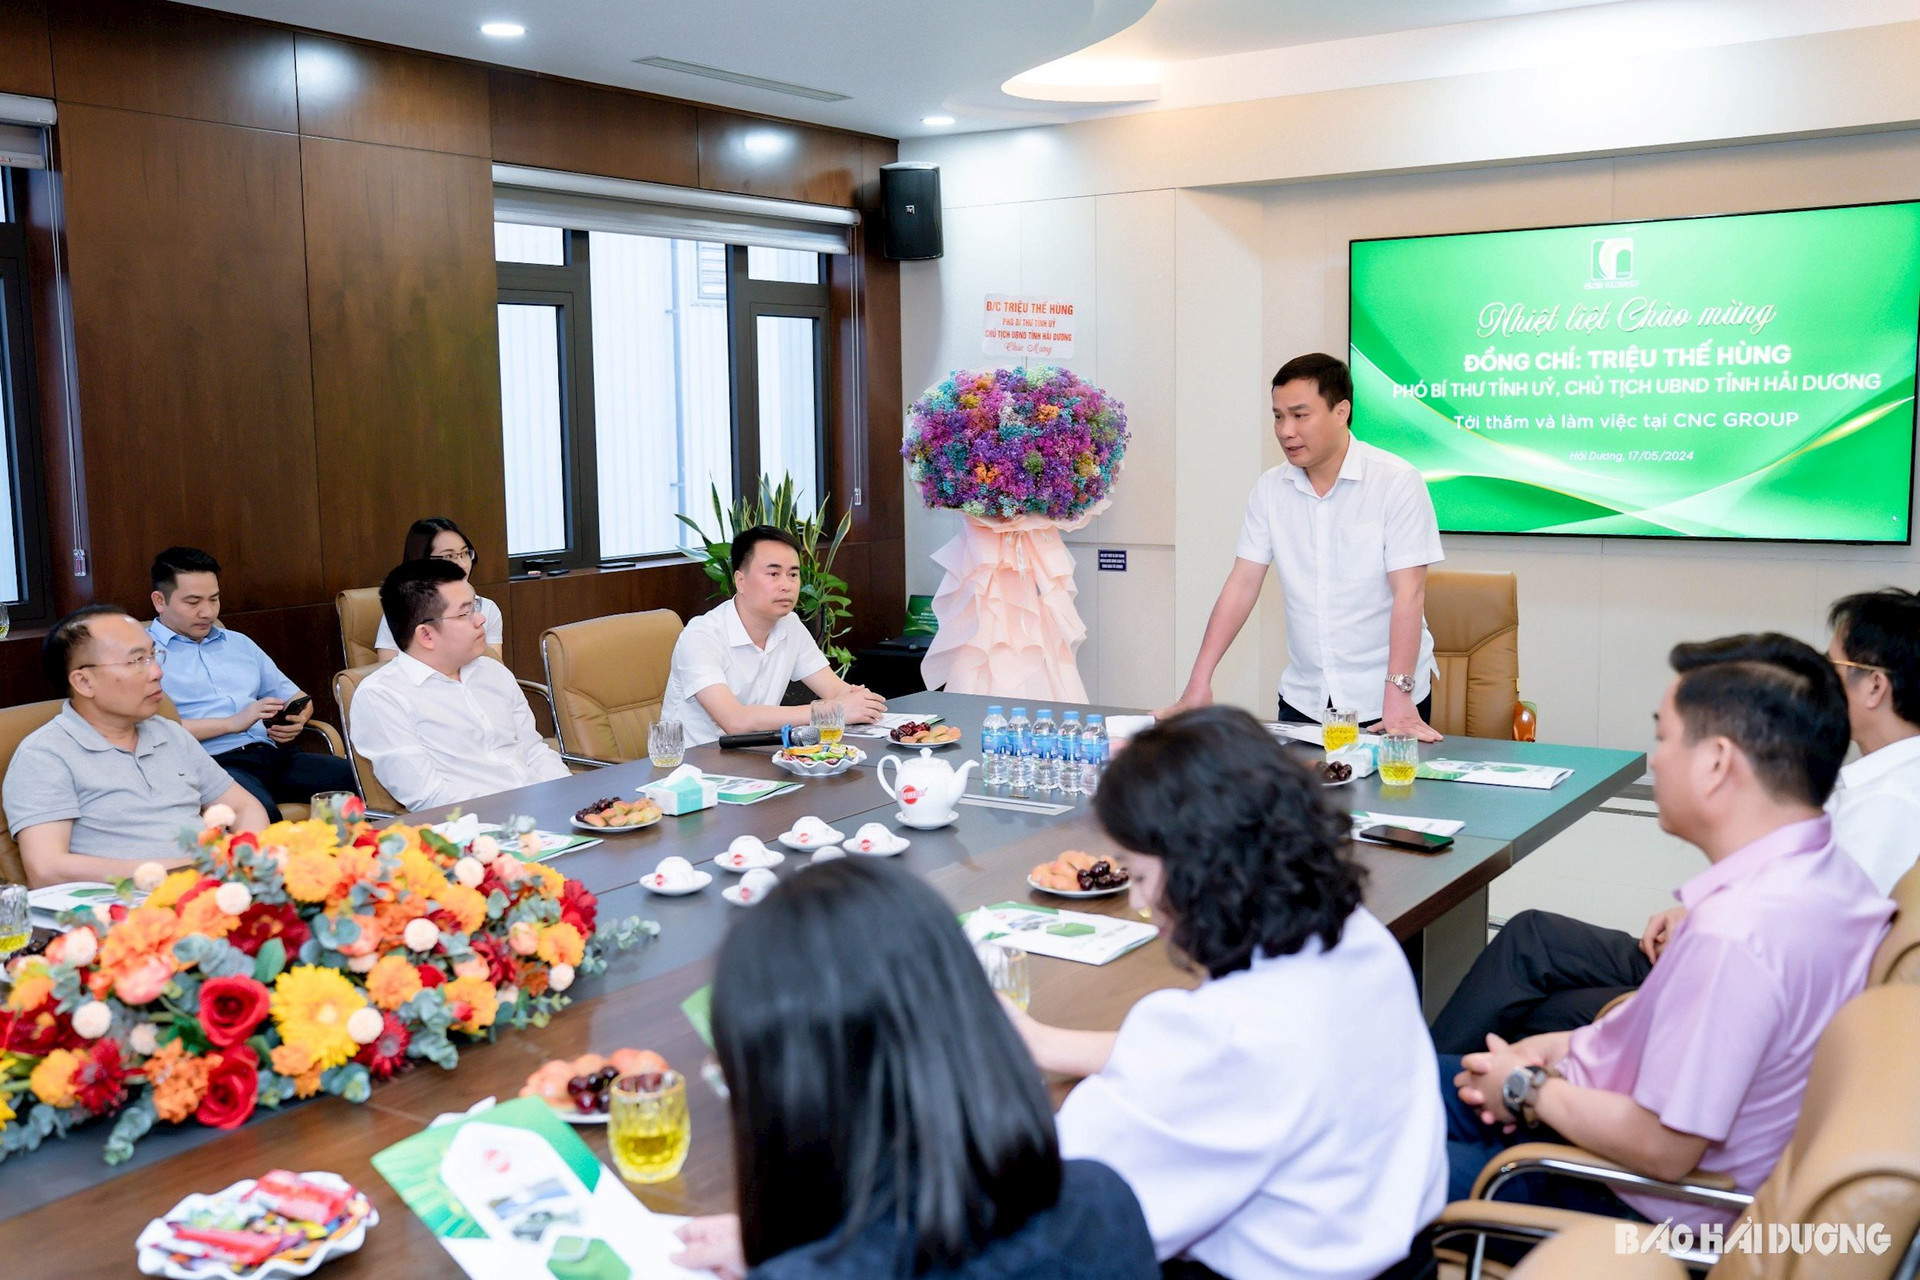 Đồng chí Triệu Thế Hùng, Phó Bí thư Tỉnh ủy, Chủ tịch UBND tỉnh Hải Dương phát biểu tại buổi làm việc với lãnh đạo Công ty CP Dinh dưỡng Quốc tế CNC